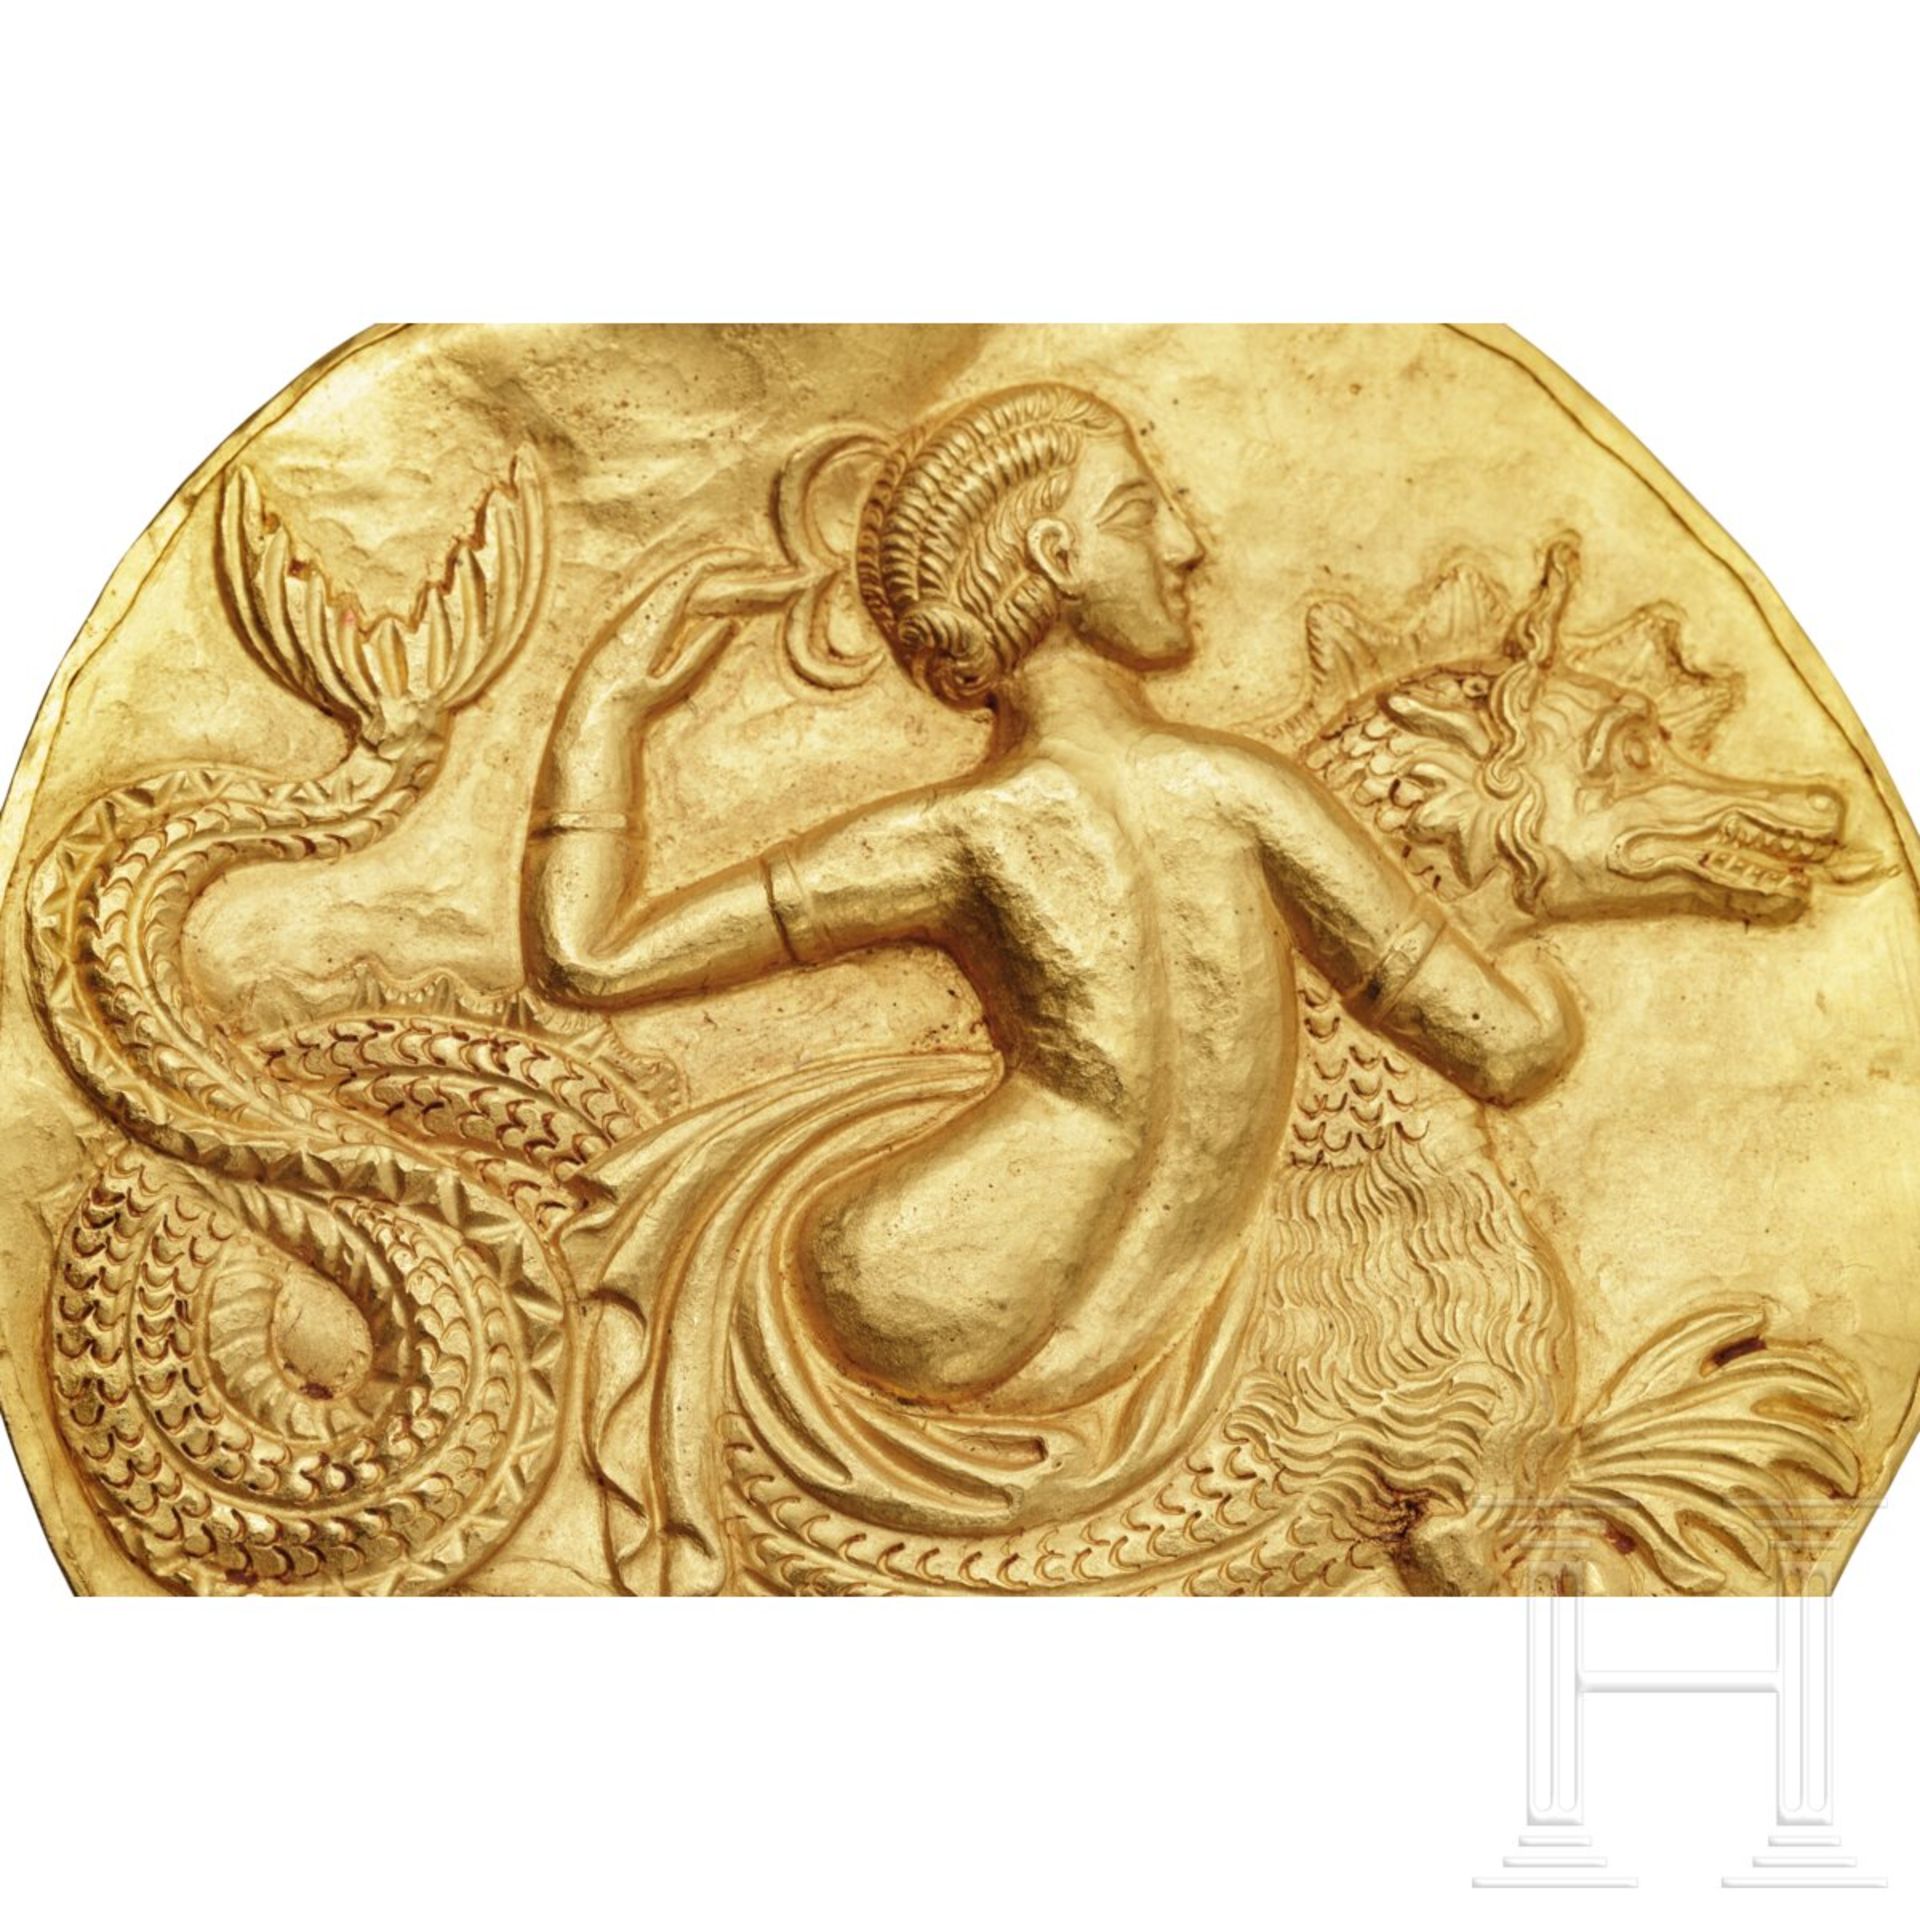 Herausragendes Goldmedaillon mit Nereide, hellenistisch, 3. Jhdt. v. Chr. - Image 2 of 4